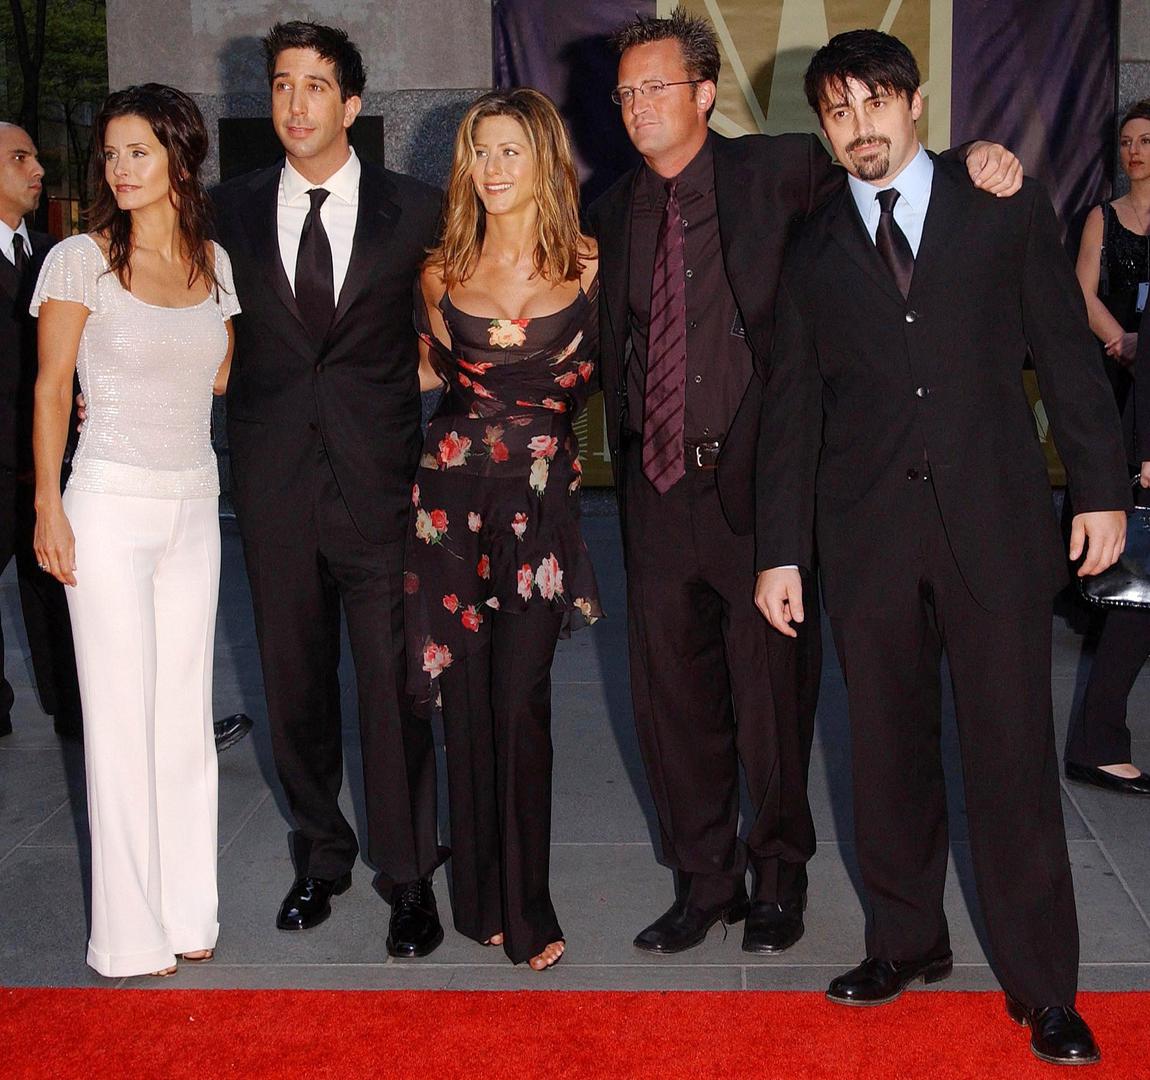 Glumačka postava "Prijatelja" Courteney Cox Arquette, David Schwimmer, Jennifer Aniston, Matthew Perry i Matt LeBlanc stiže u NBC studio na 75. godišnjicu NBC-ja. Na Manhattanu 5. svibnja 2002. godine.